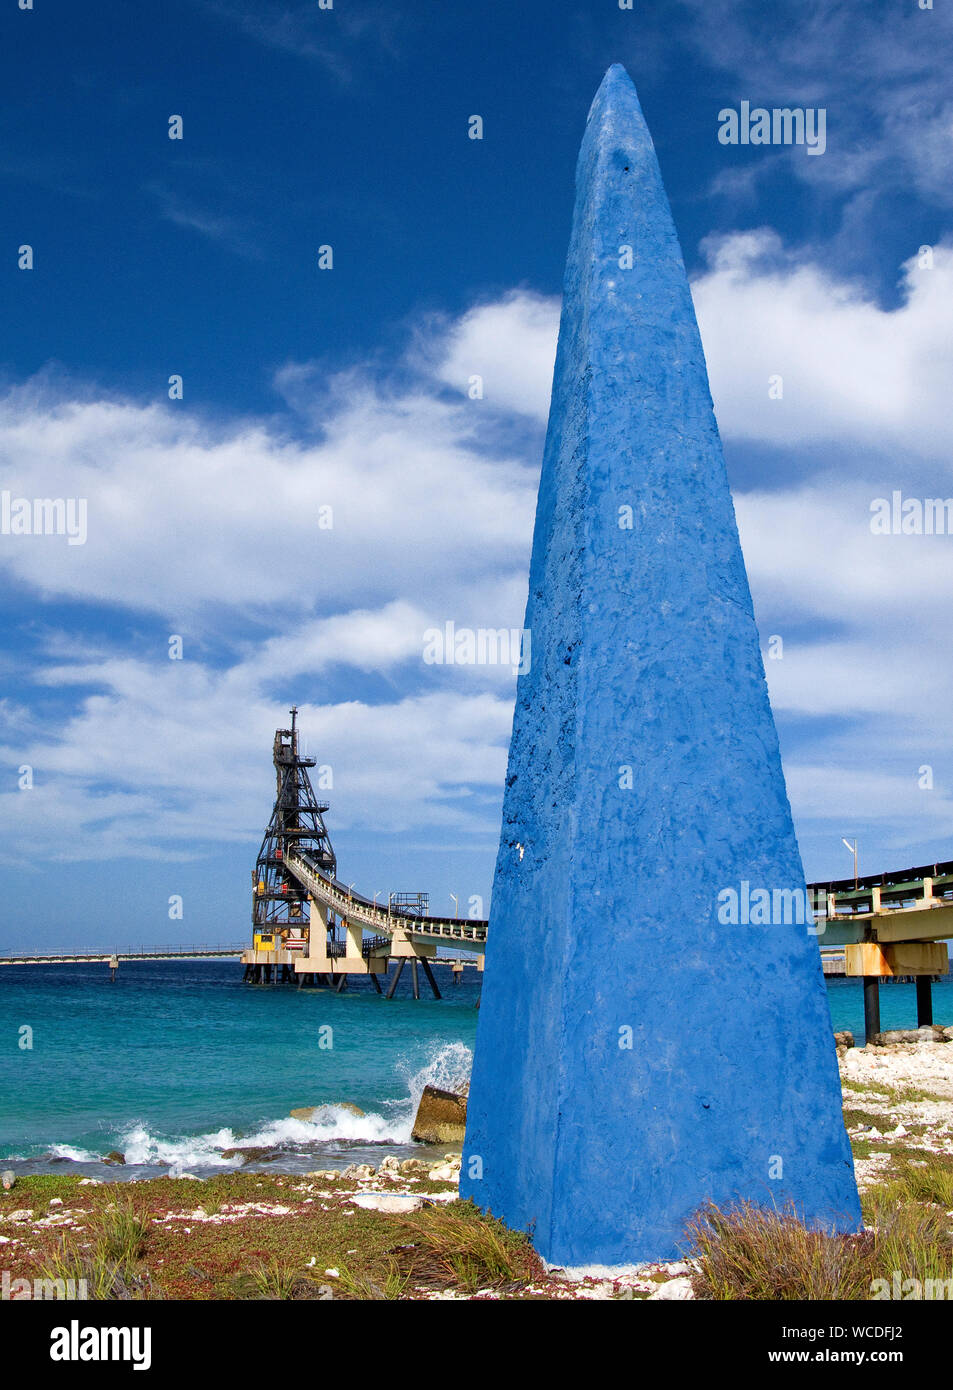 Obelisk at salt pier, builded in 1837 for ship orientation, salt transport, Bonaire, Netherland Antilles Stock Photo